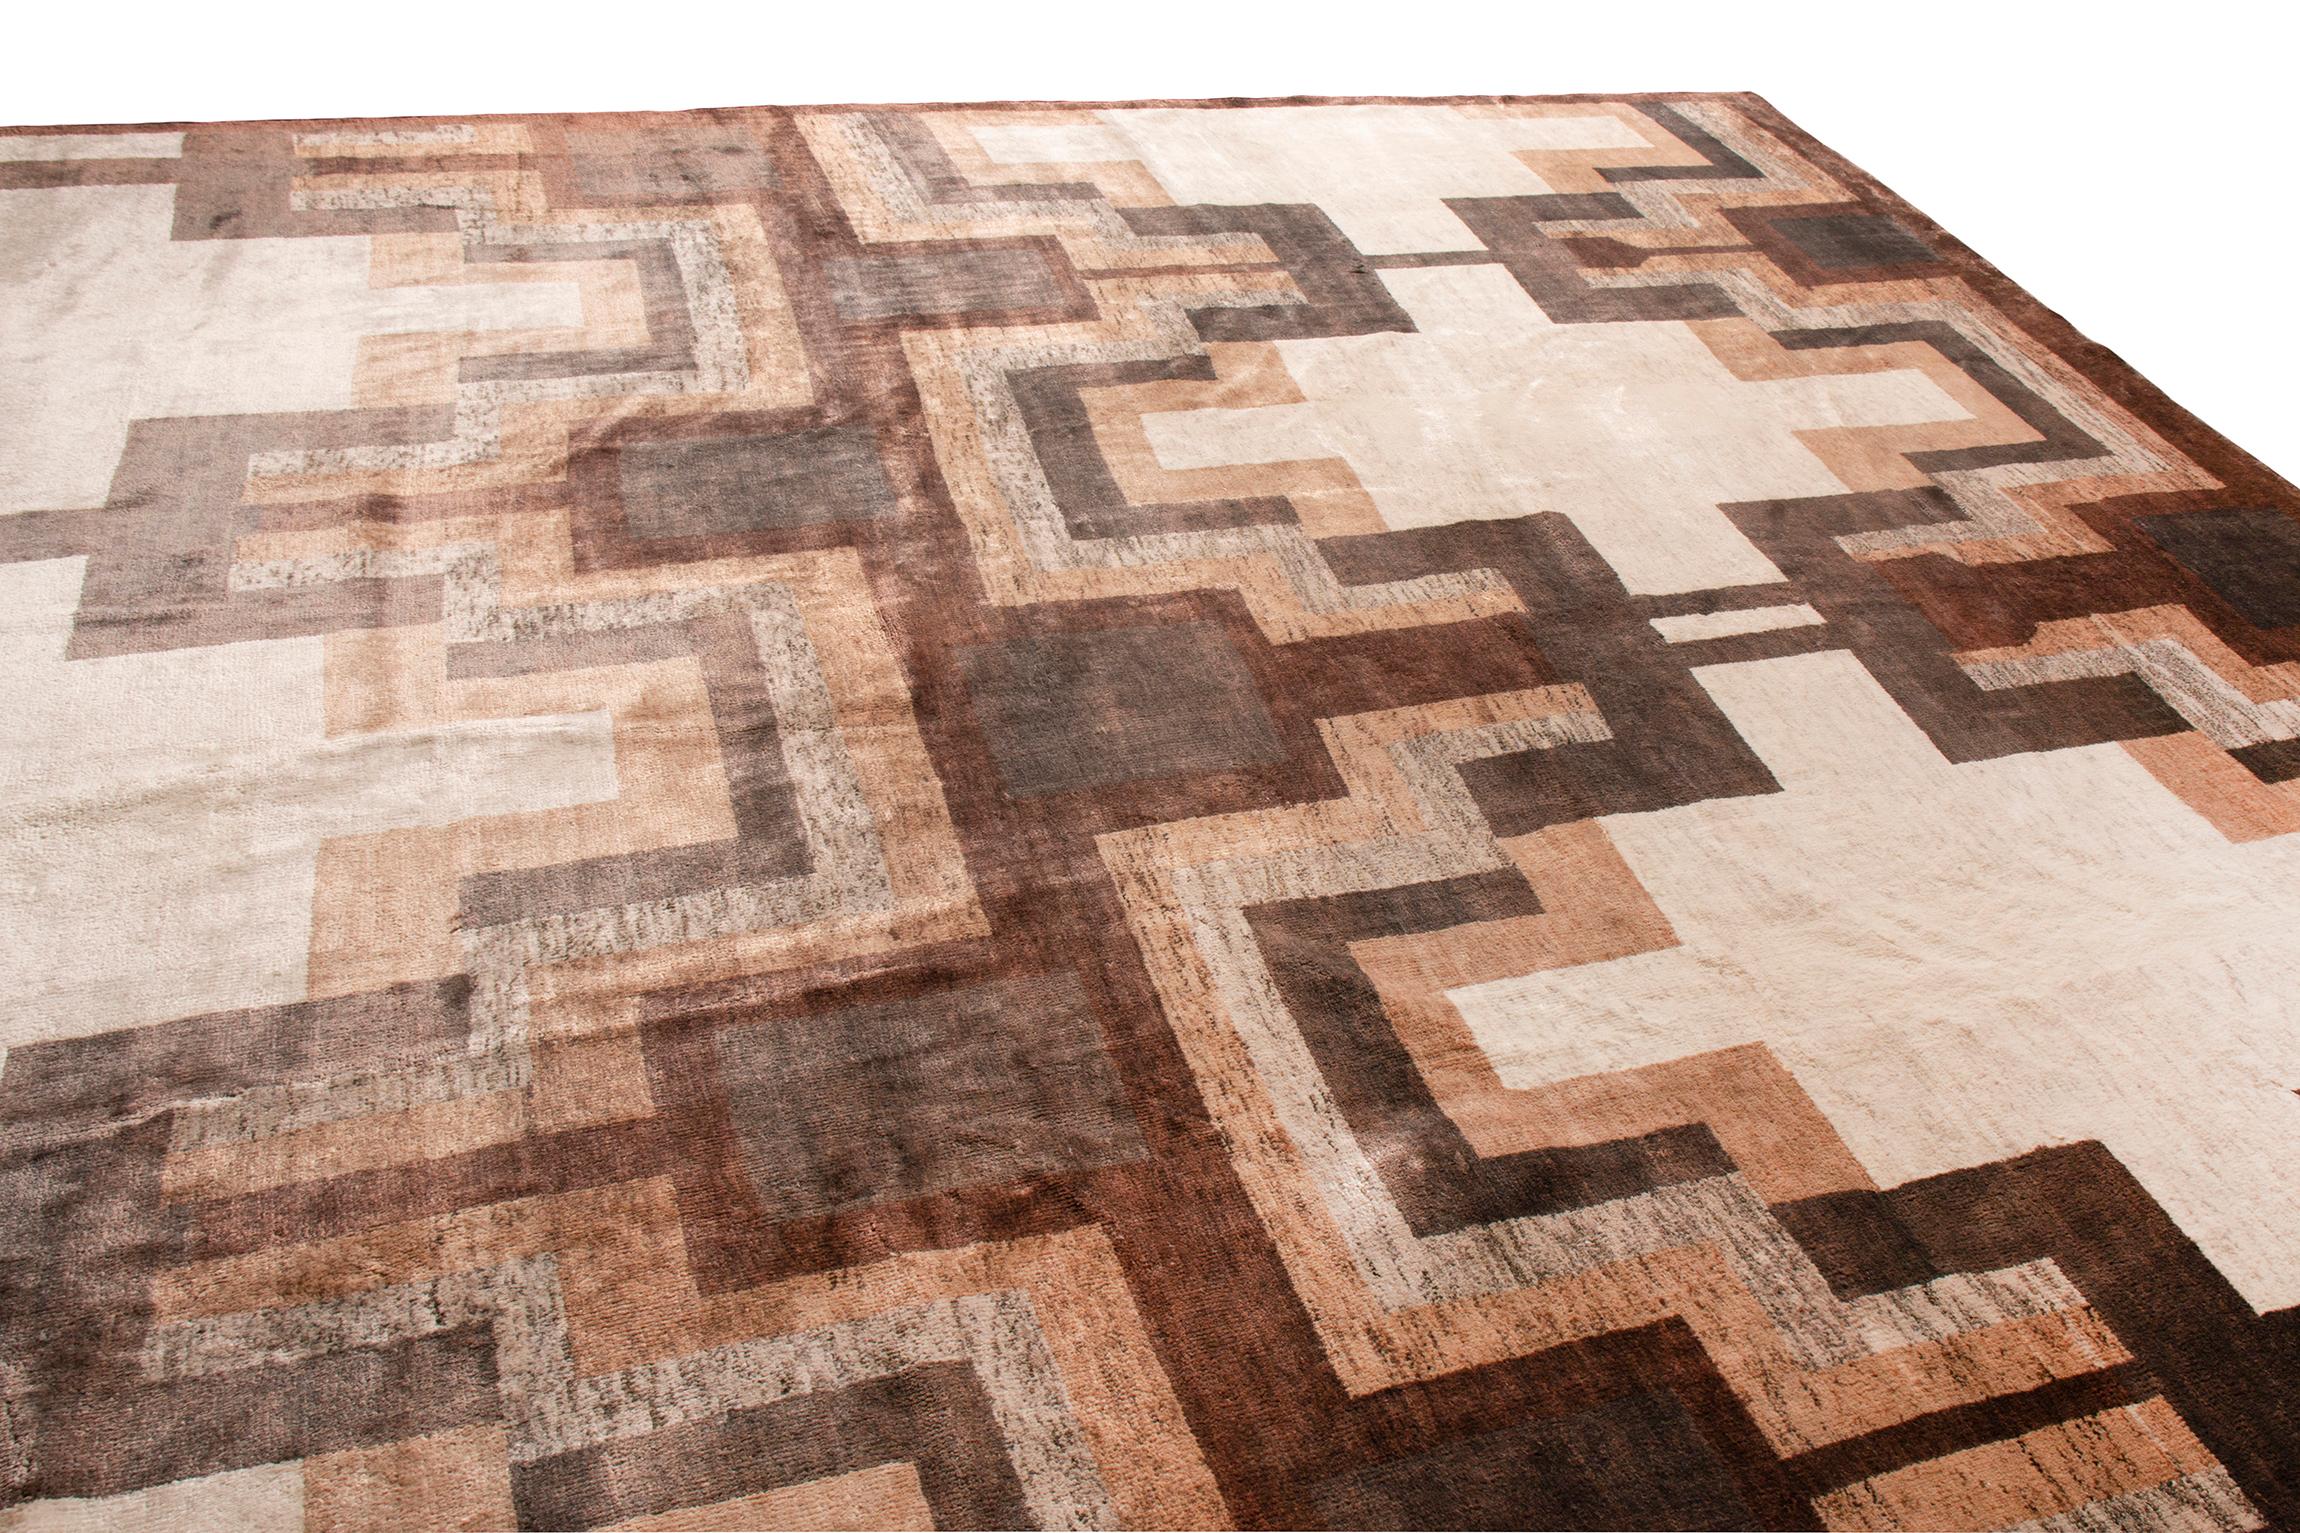 Indian Rug & Kilim’s Art Deco Style Rug, Beige Brown Midcentury Geometric Pattern